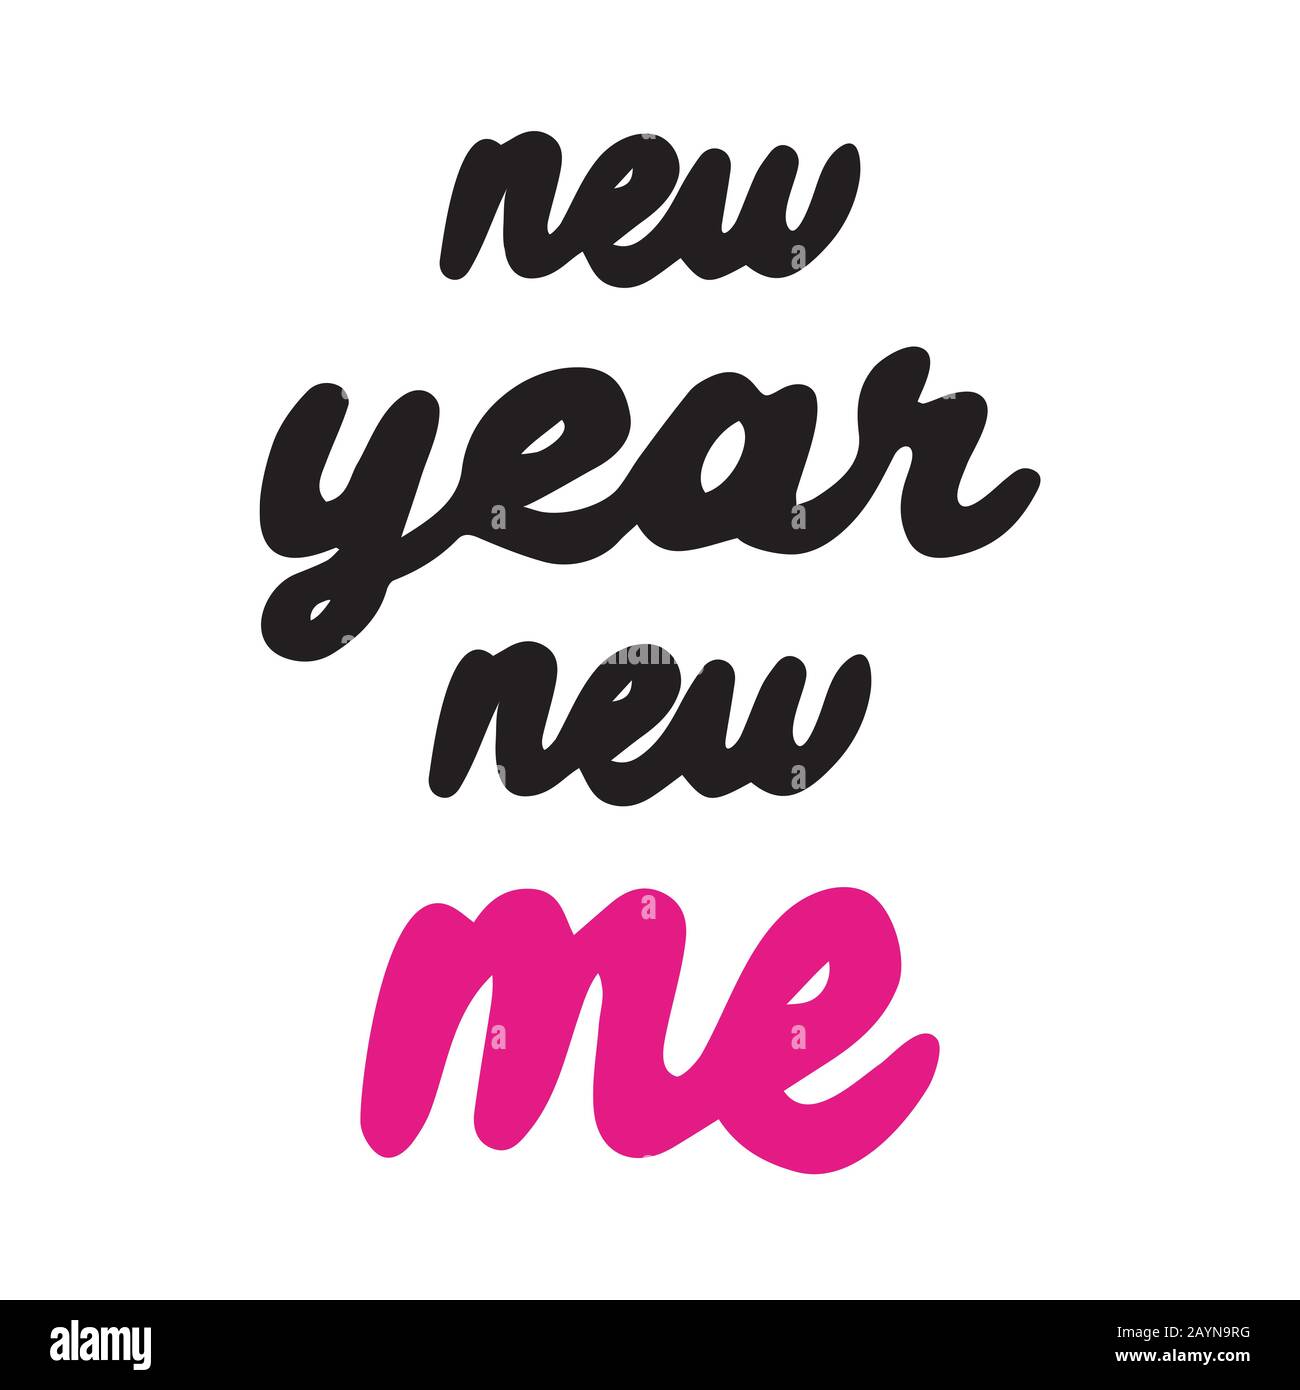 Neues Jahr Neues handschriftliches Zitat von mir. Motivierender und inspirierender Slogan. Kreative Typografie für Ihr Design. Schwarzes, pinkfarbenes und weißes Design. Vektor. Stock Vektor